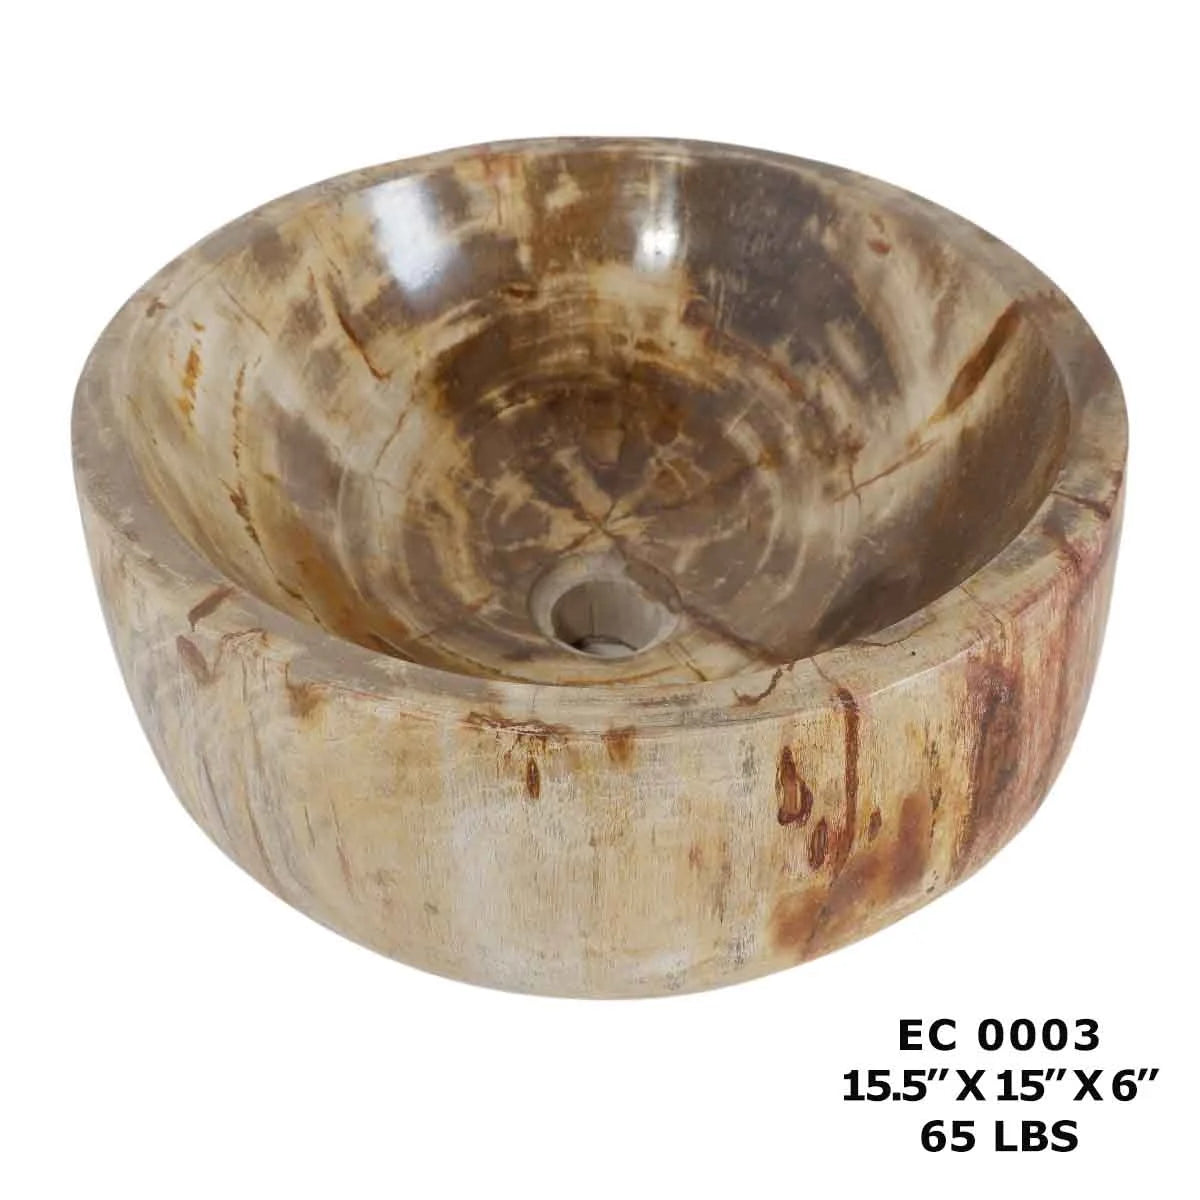 Petrified Wood Sink Bowls for Bathroom, Bowl Sink Vanity EC0003